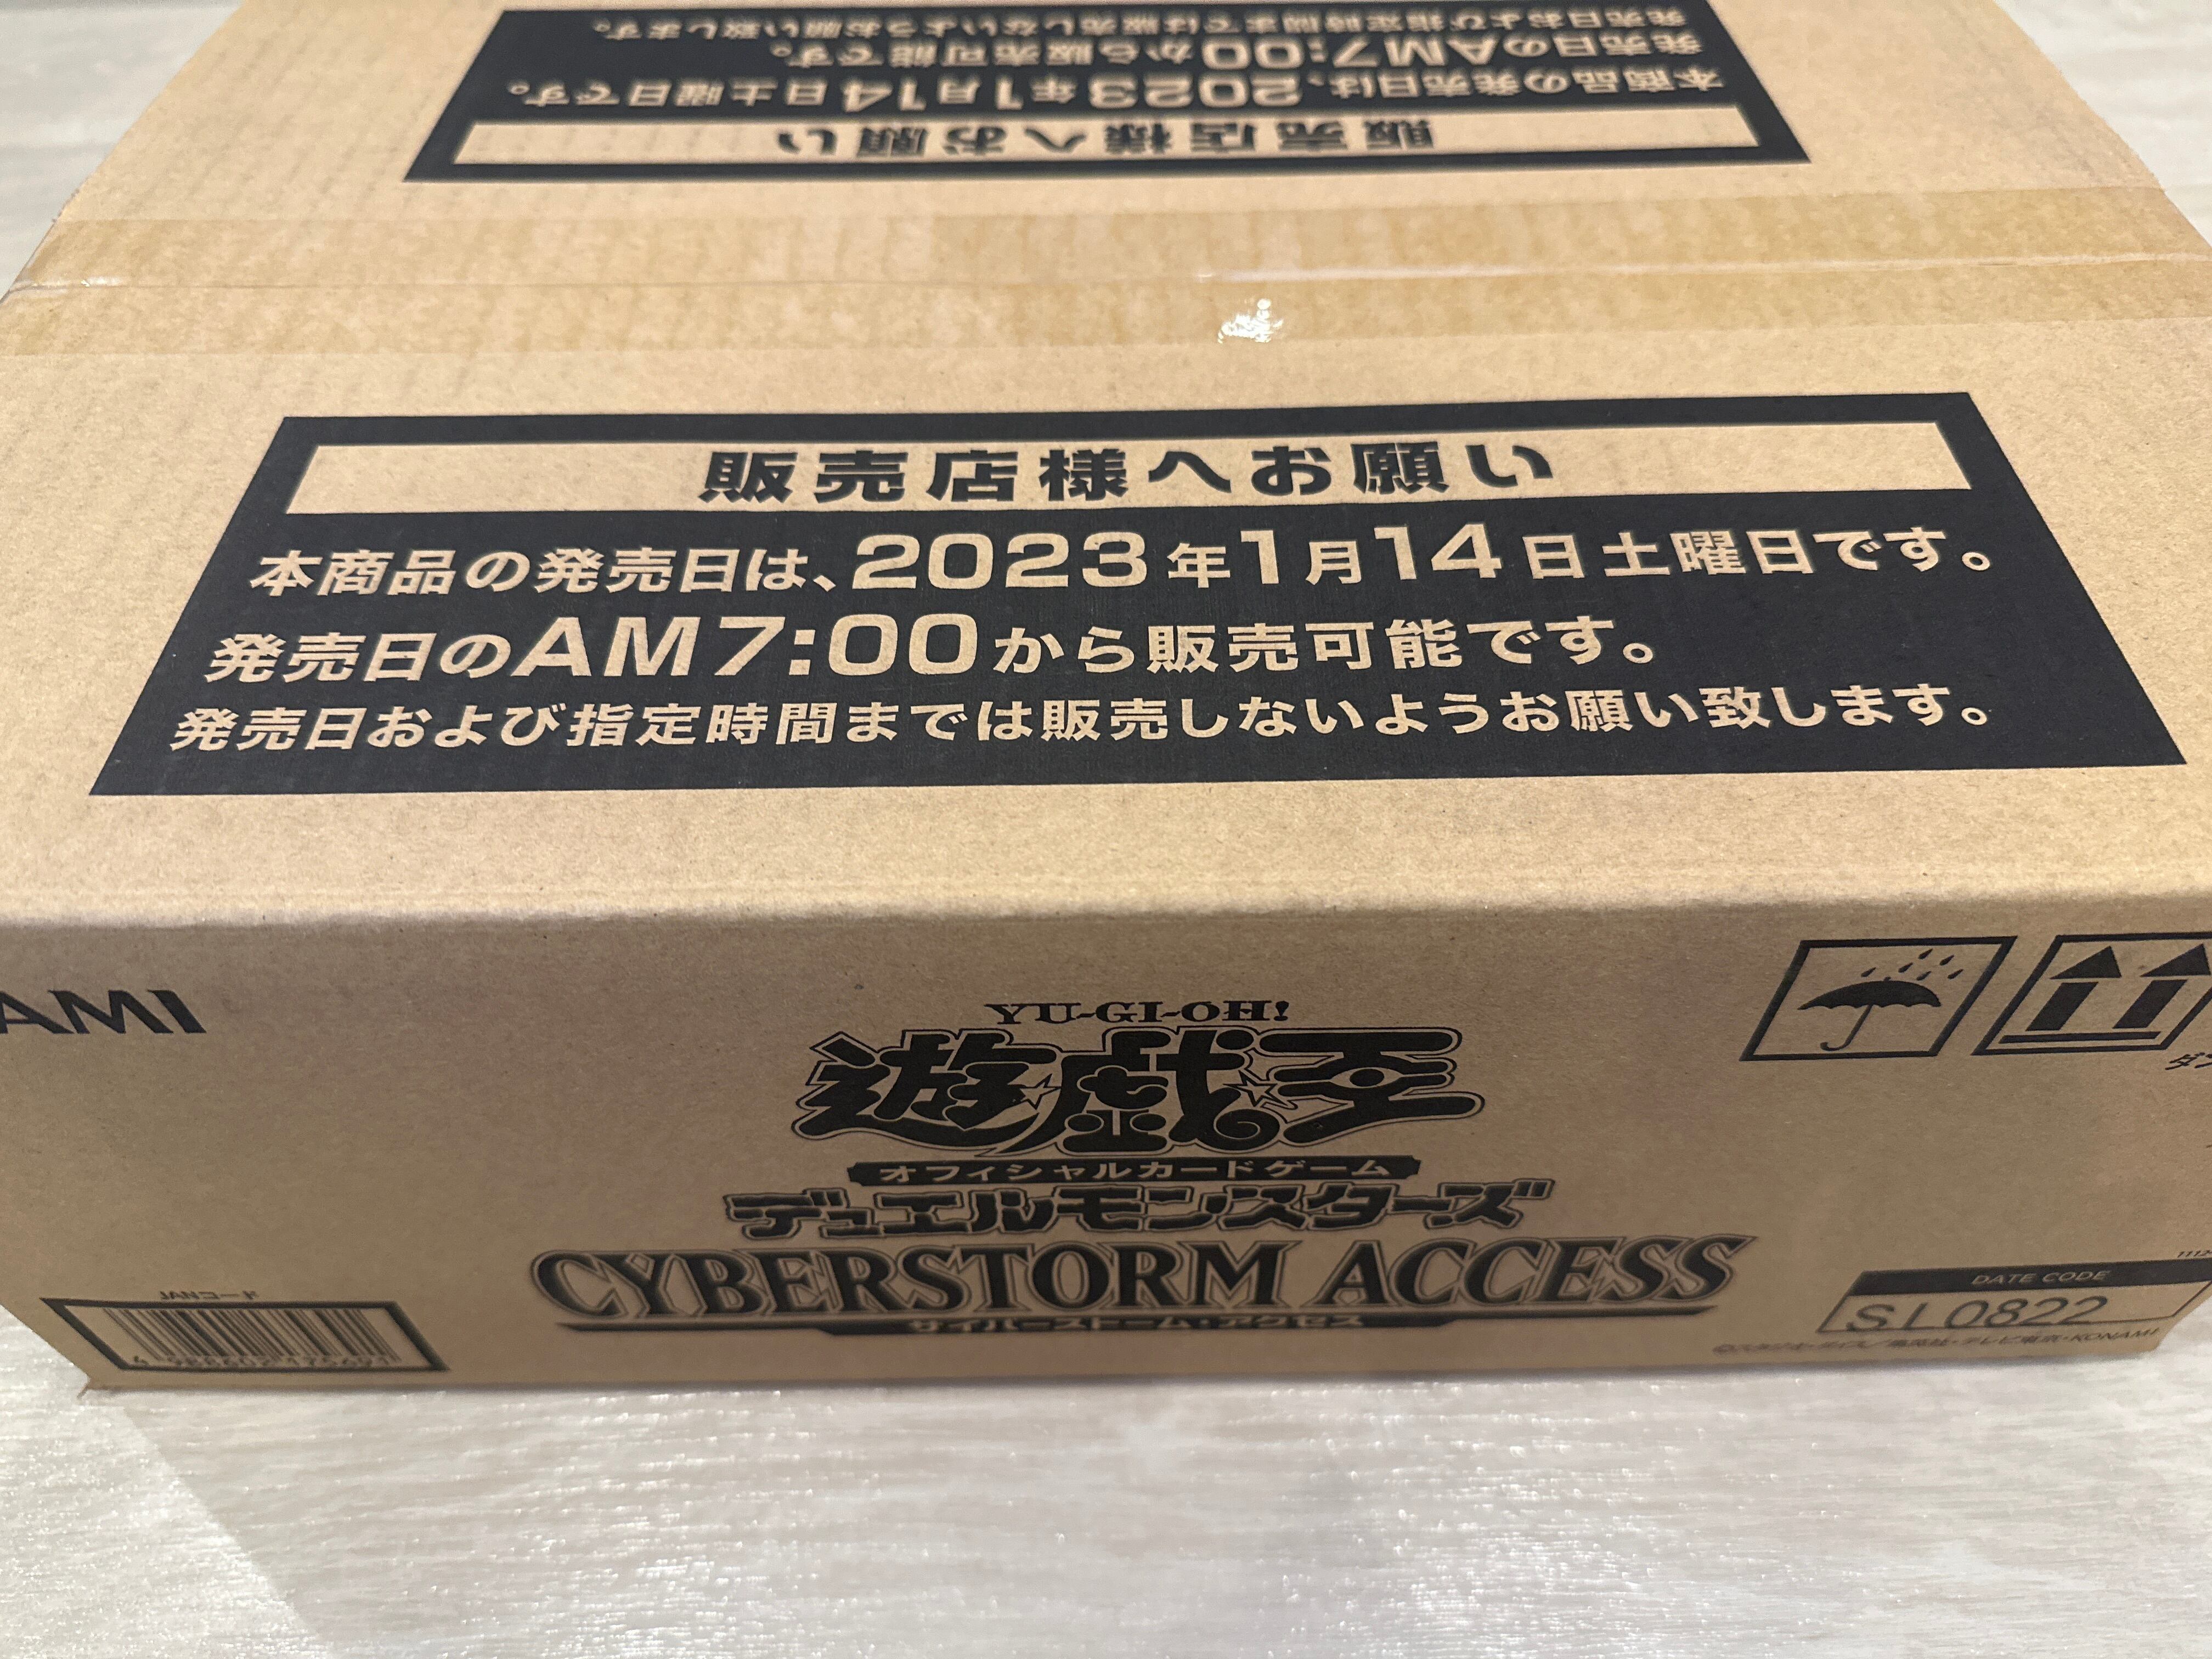 遊戯王 サイバーストームアクセス 初回生産版 未開封品1カートン